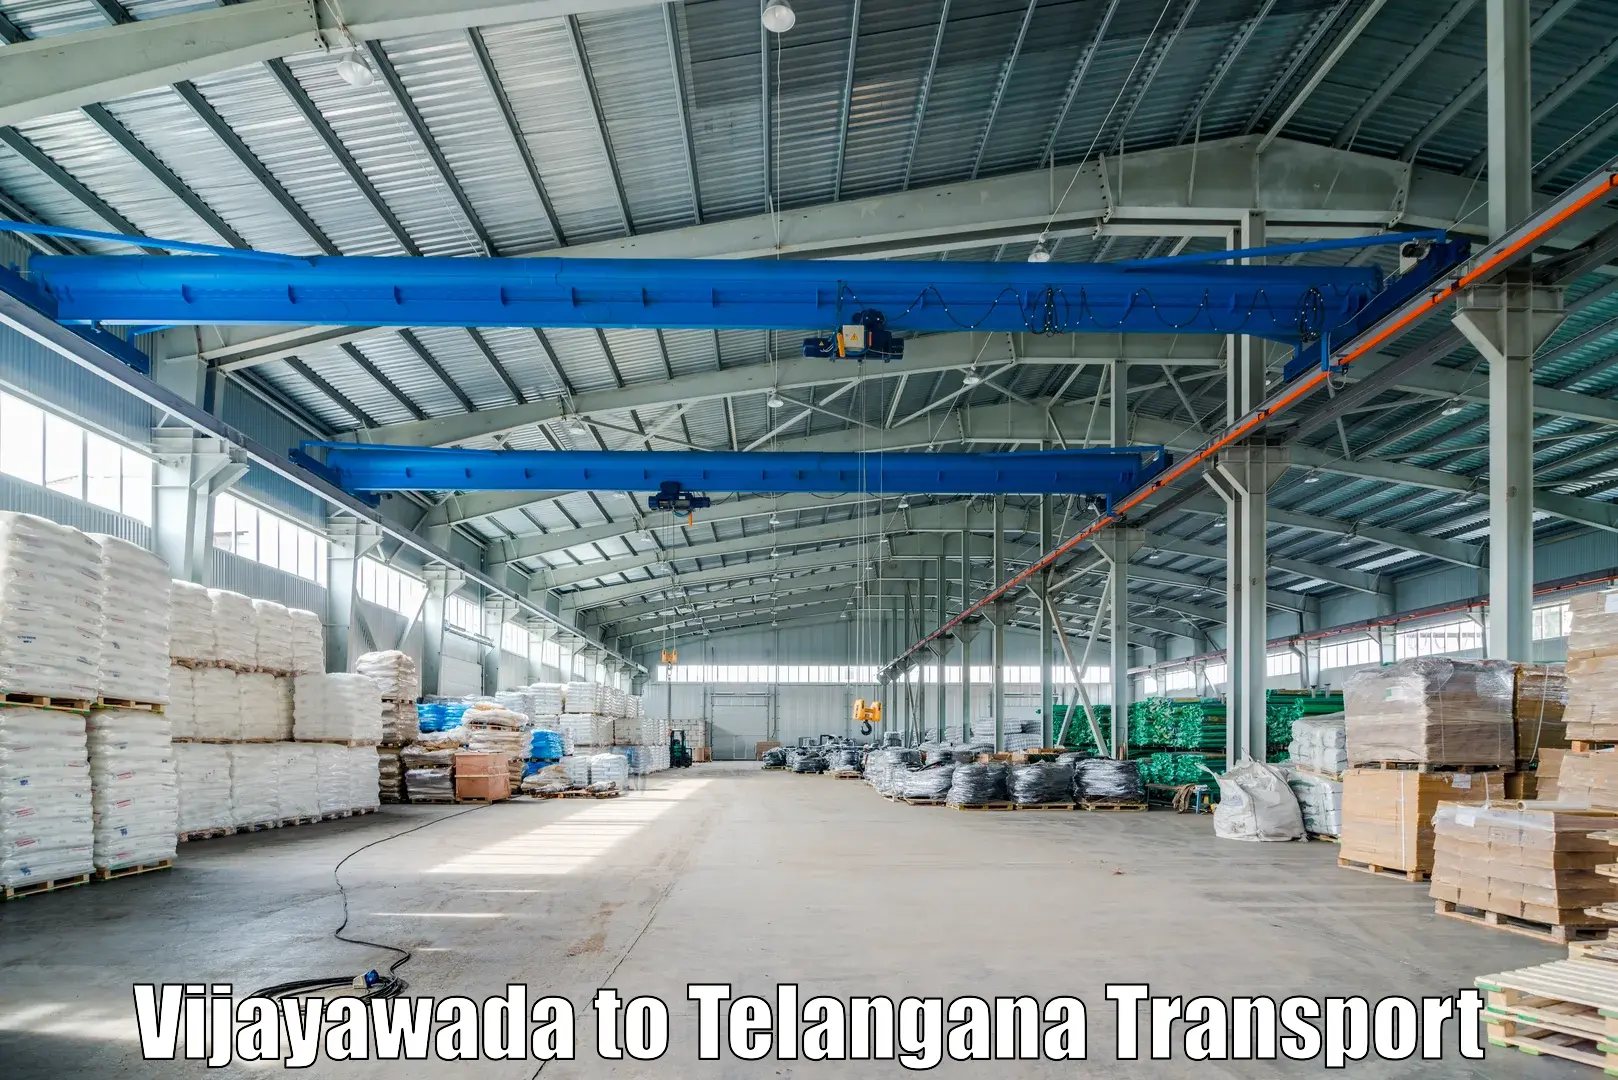 Transport in sharing Vijayawada to Medak